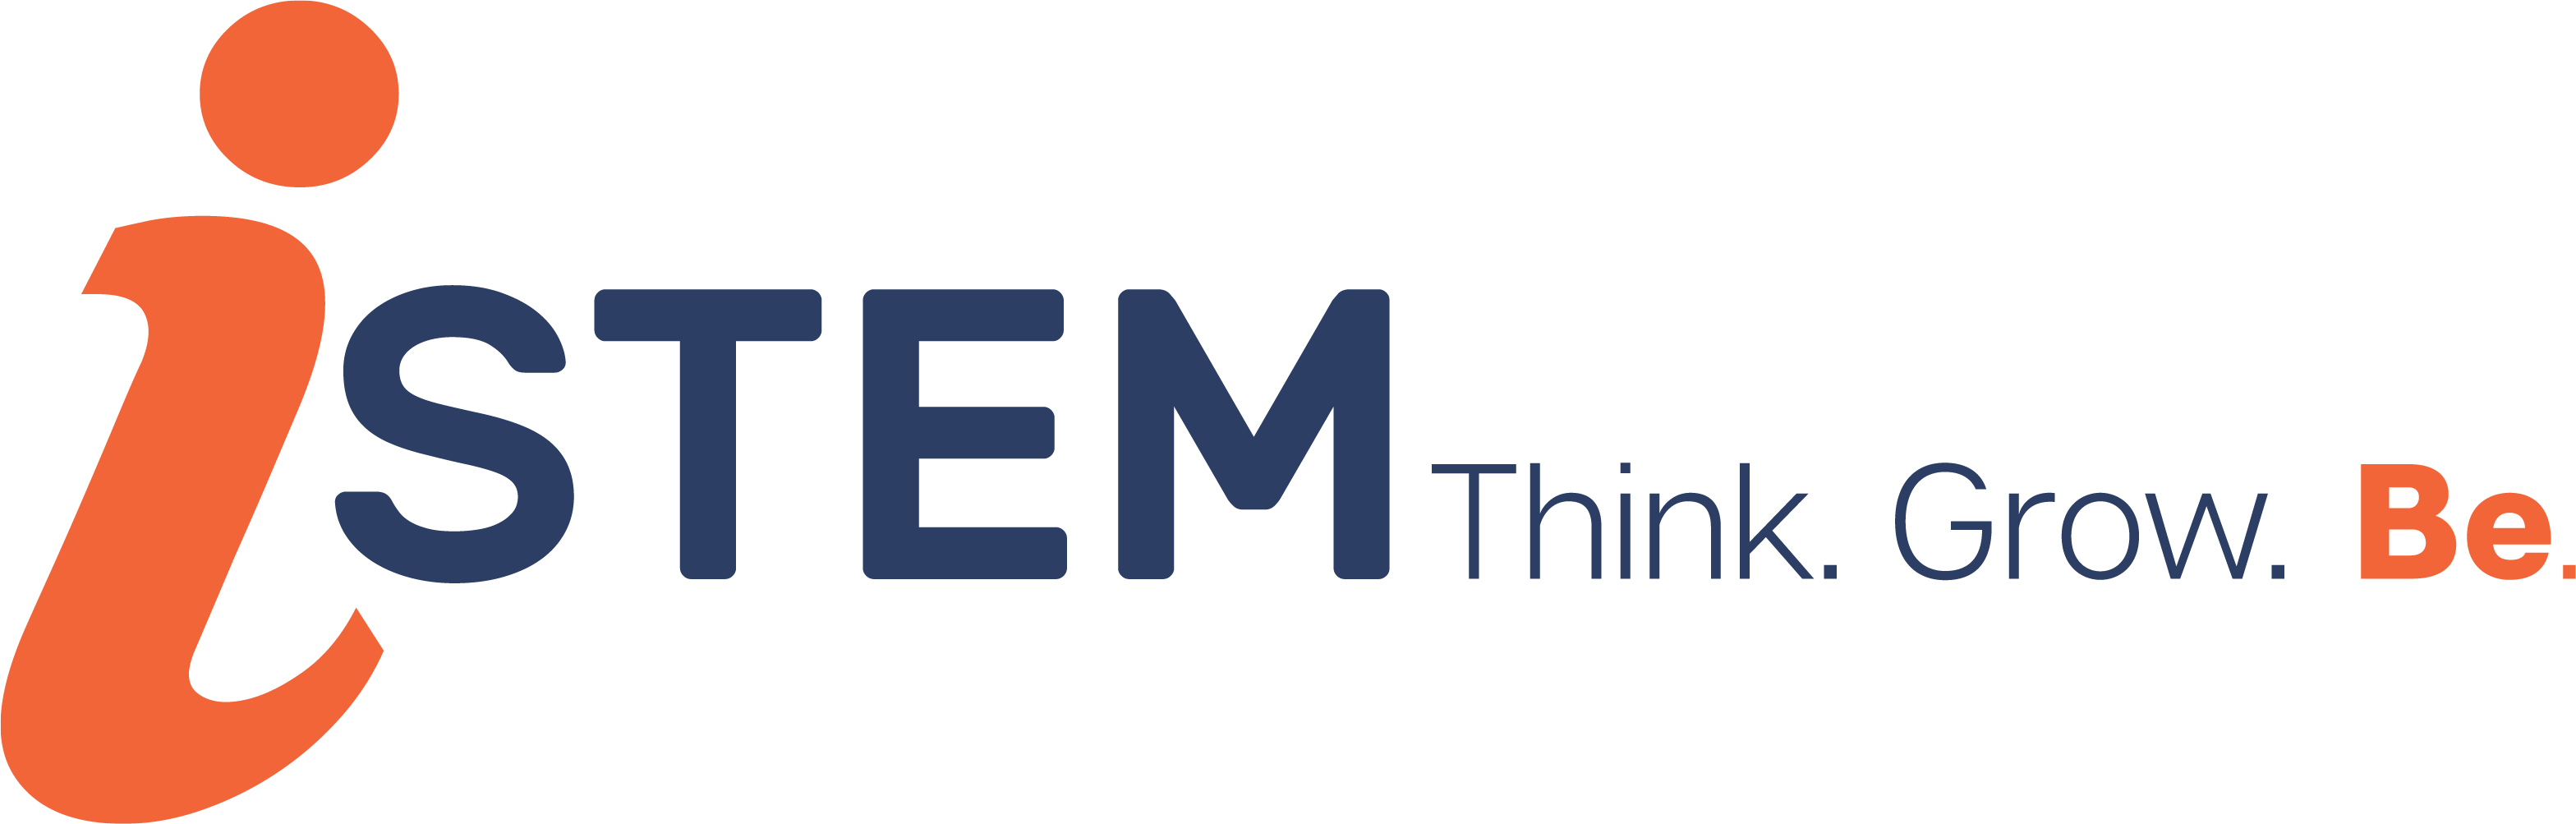 iStem logo